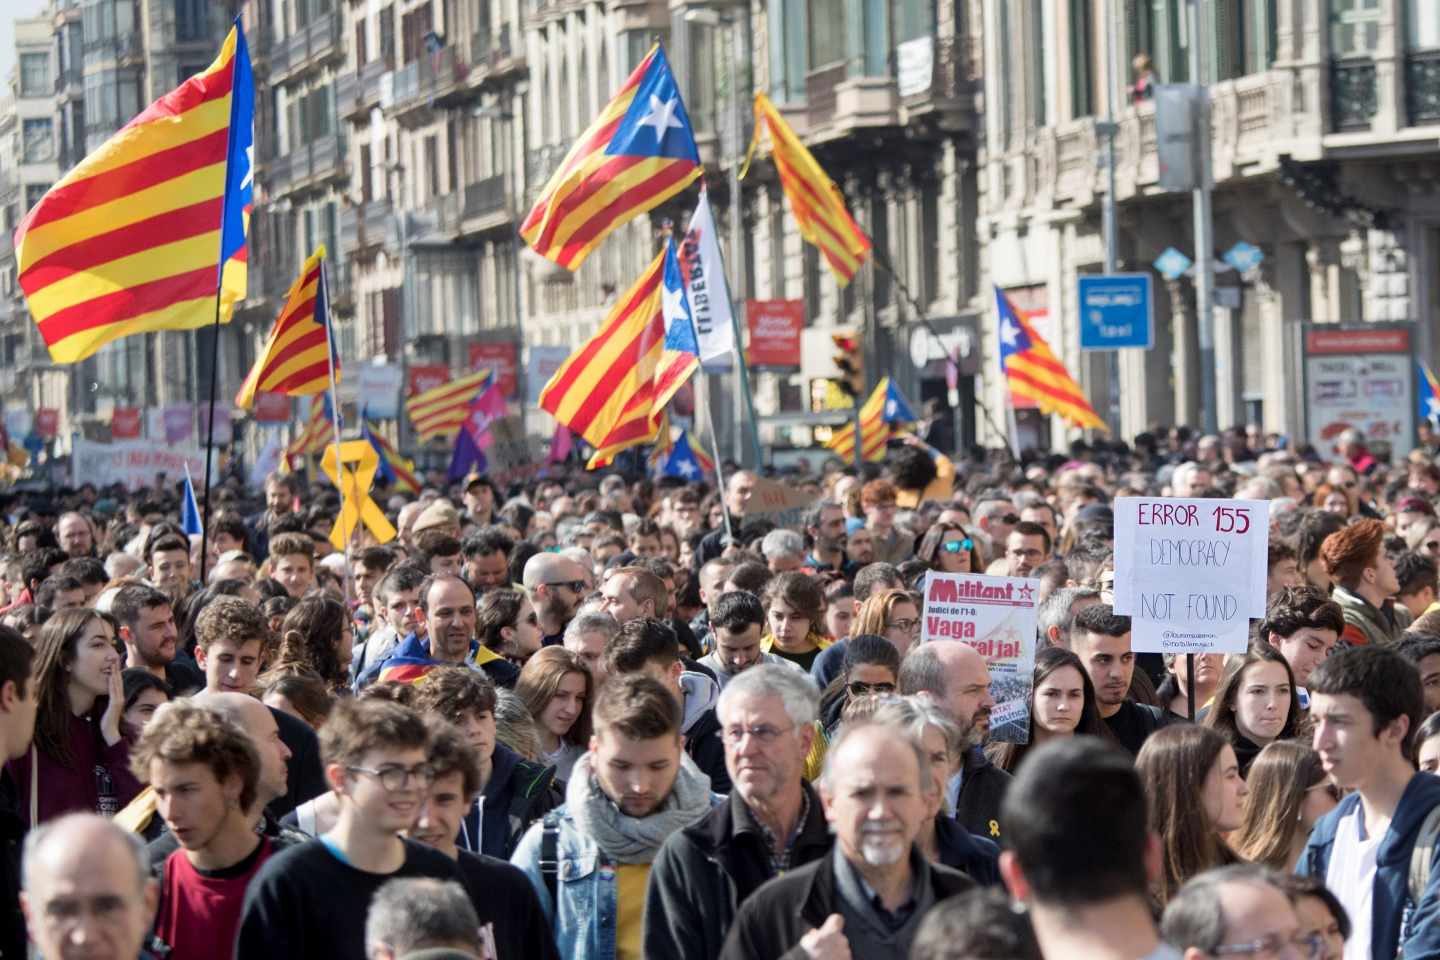 Los contrarios a la independencia de Cataluña superan a los partidarios, según el CEO